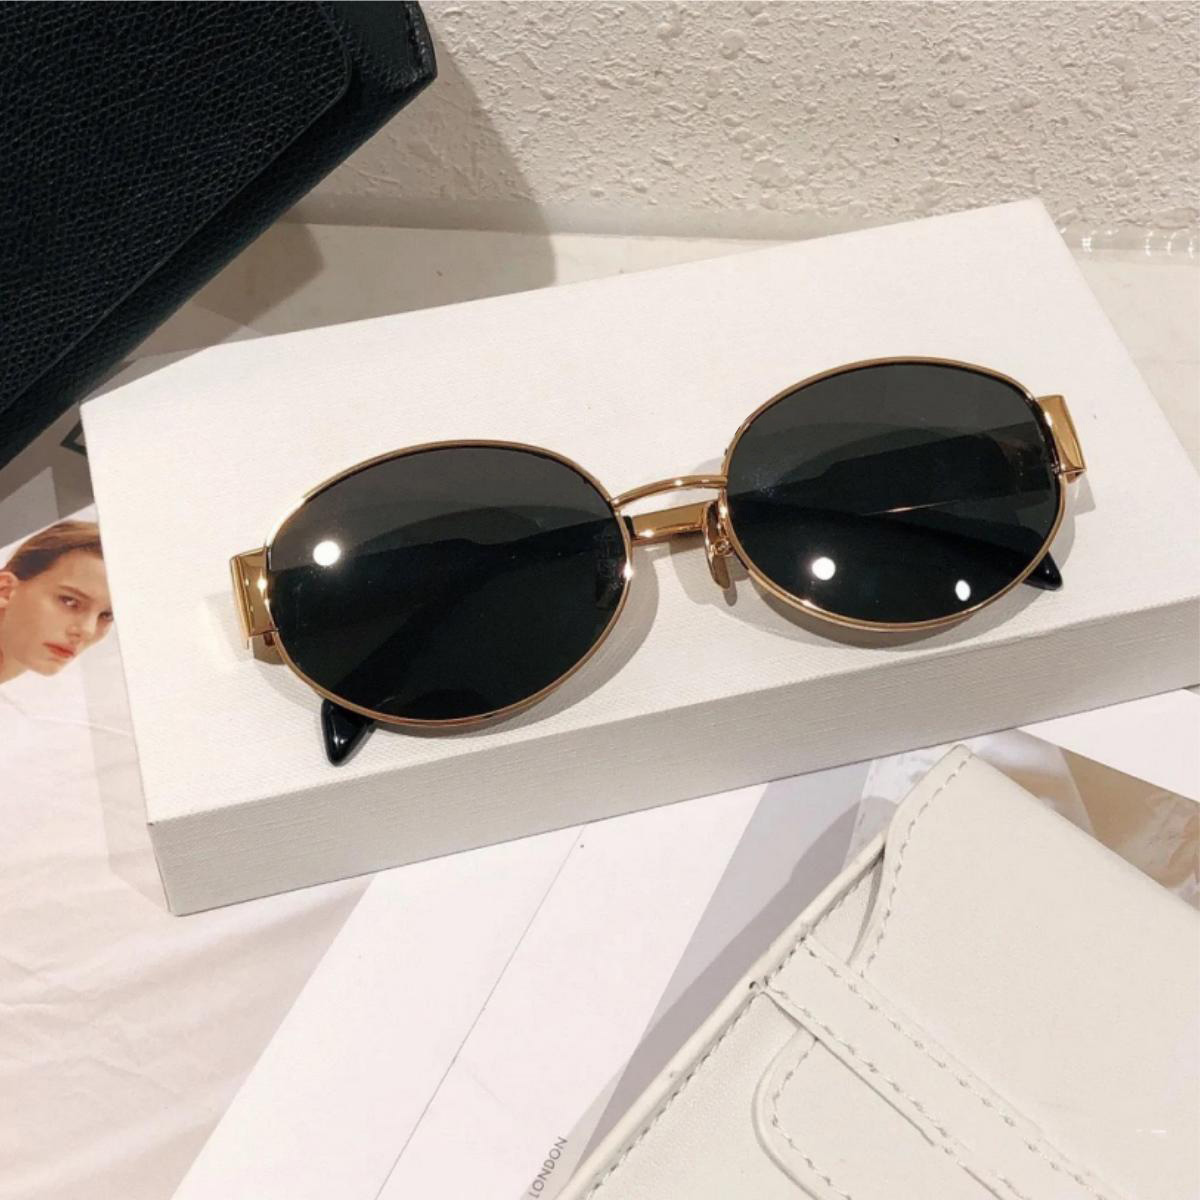 Sunglasses for women designer shades luxury brand glasses unisex traveling sunglass beach adumbral metal frame european elliptical lenses shade